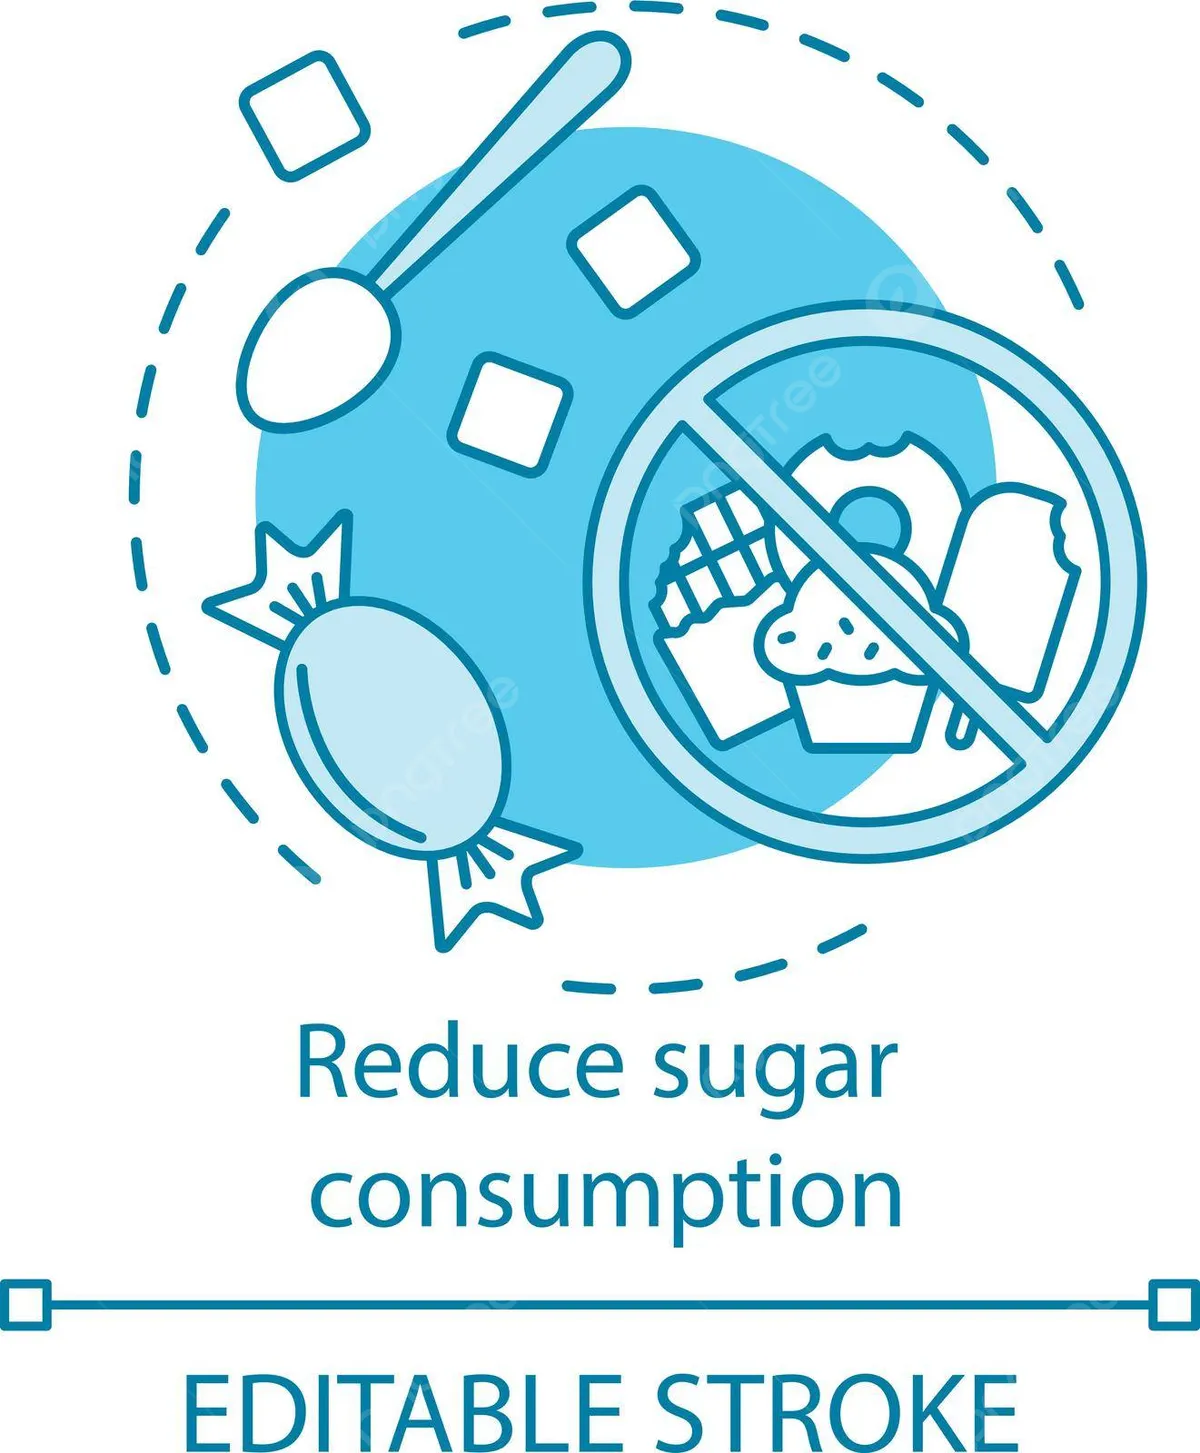 Reduce consumption